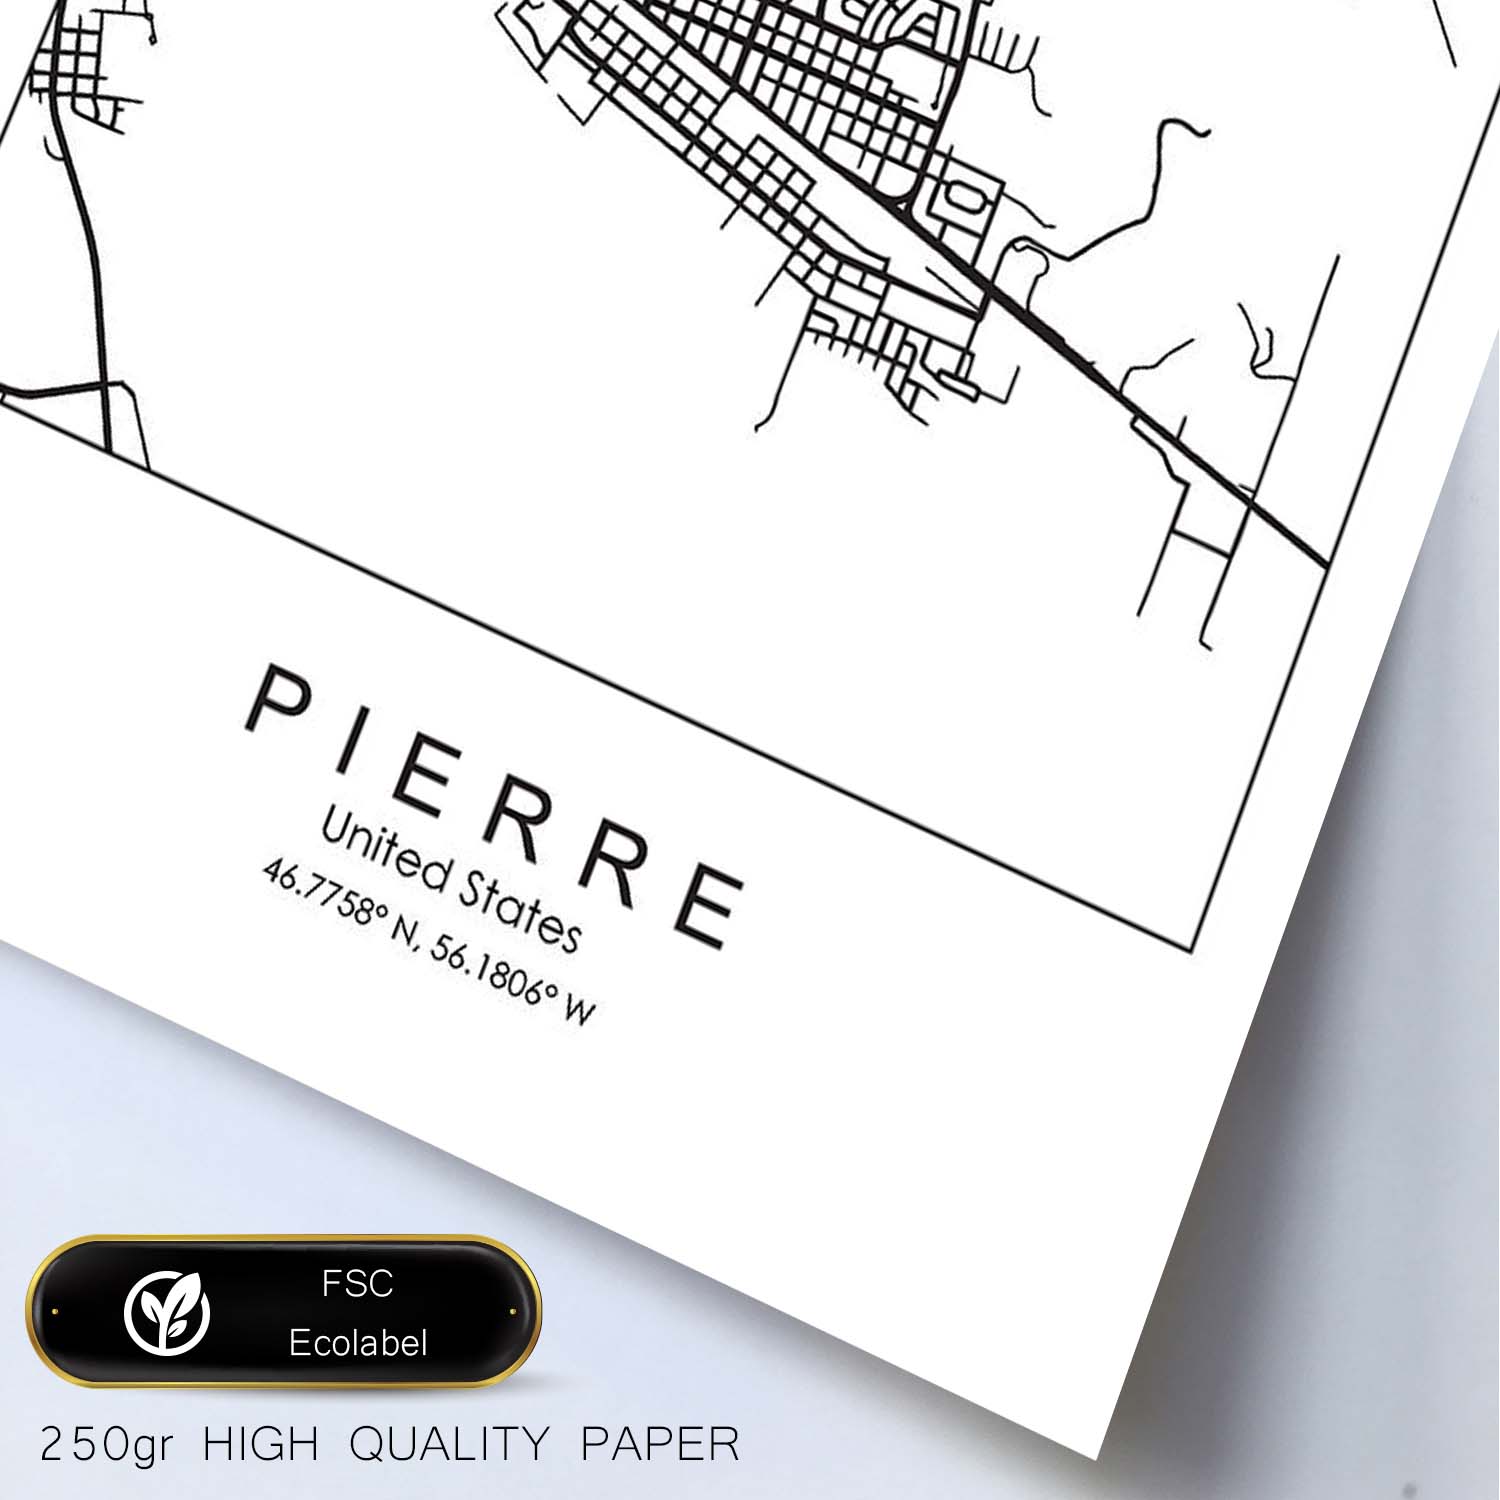 Poster con mapa de Pierre. Lámina de Estados Unidos, con imágenes de mapas y carreteras-Artwork-Nacnic-Nacnic Estudio SL